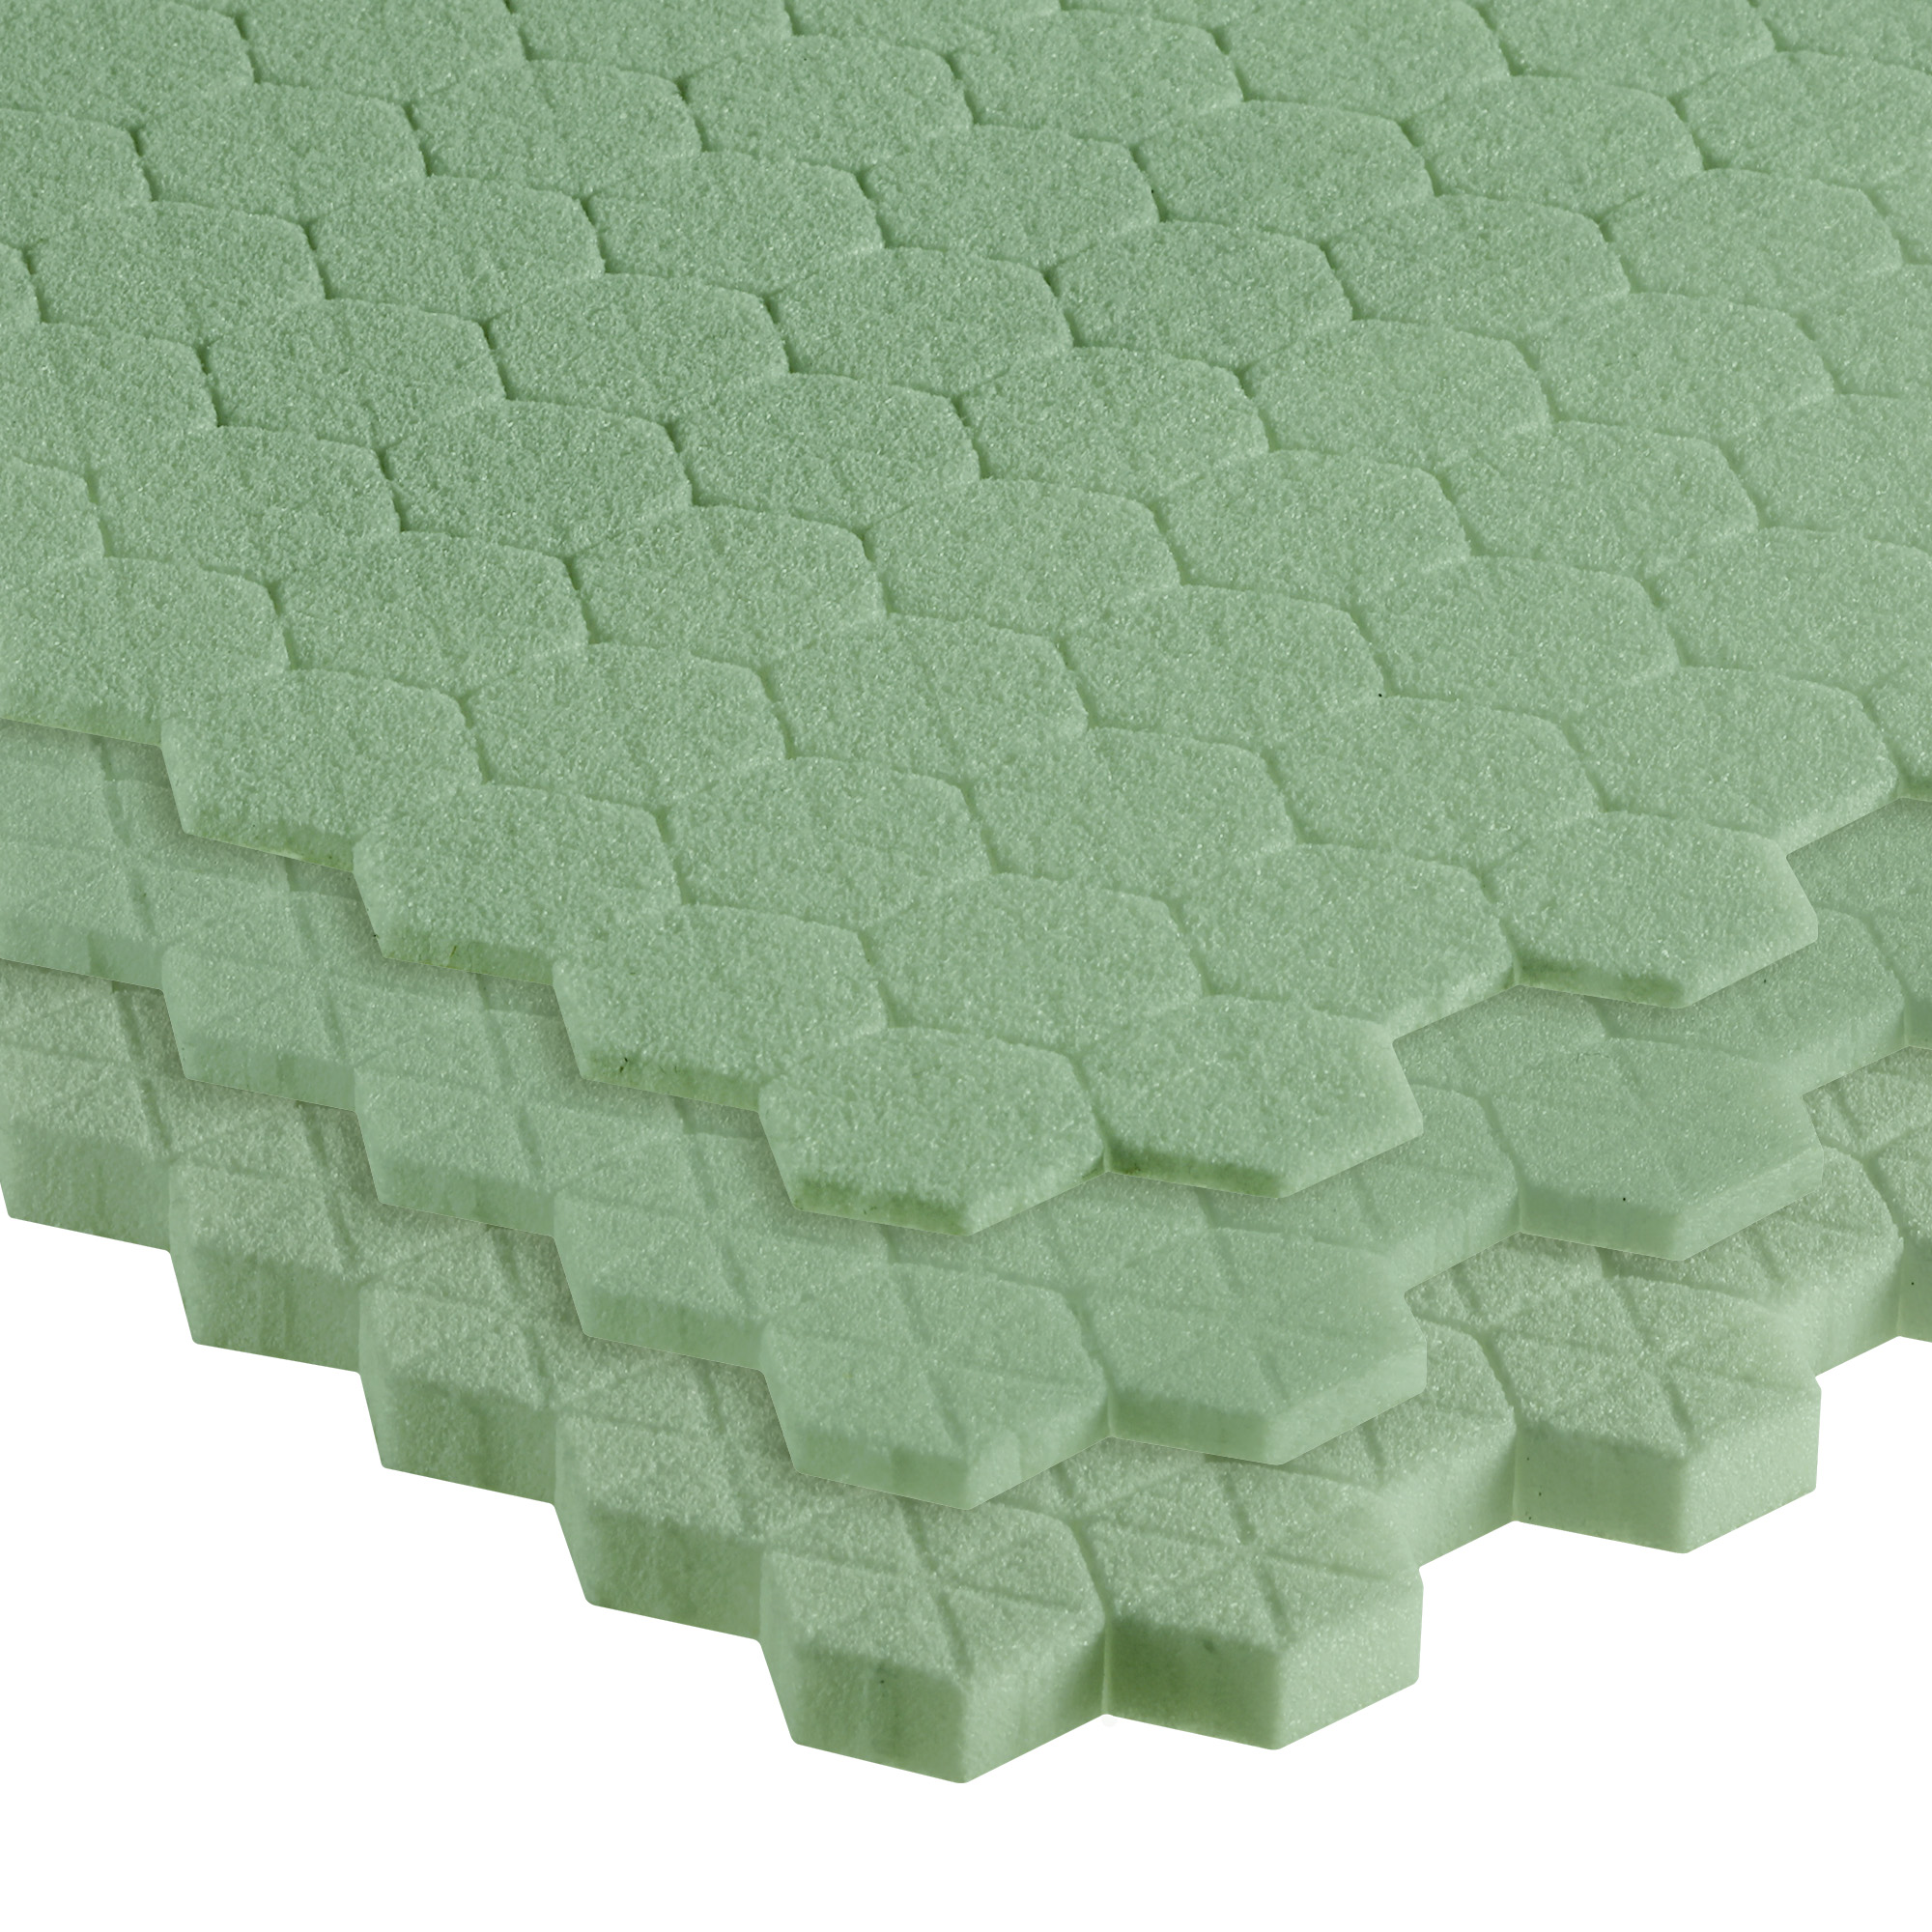 XPS foam core material - 3D, CORE™ XPS - 3D